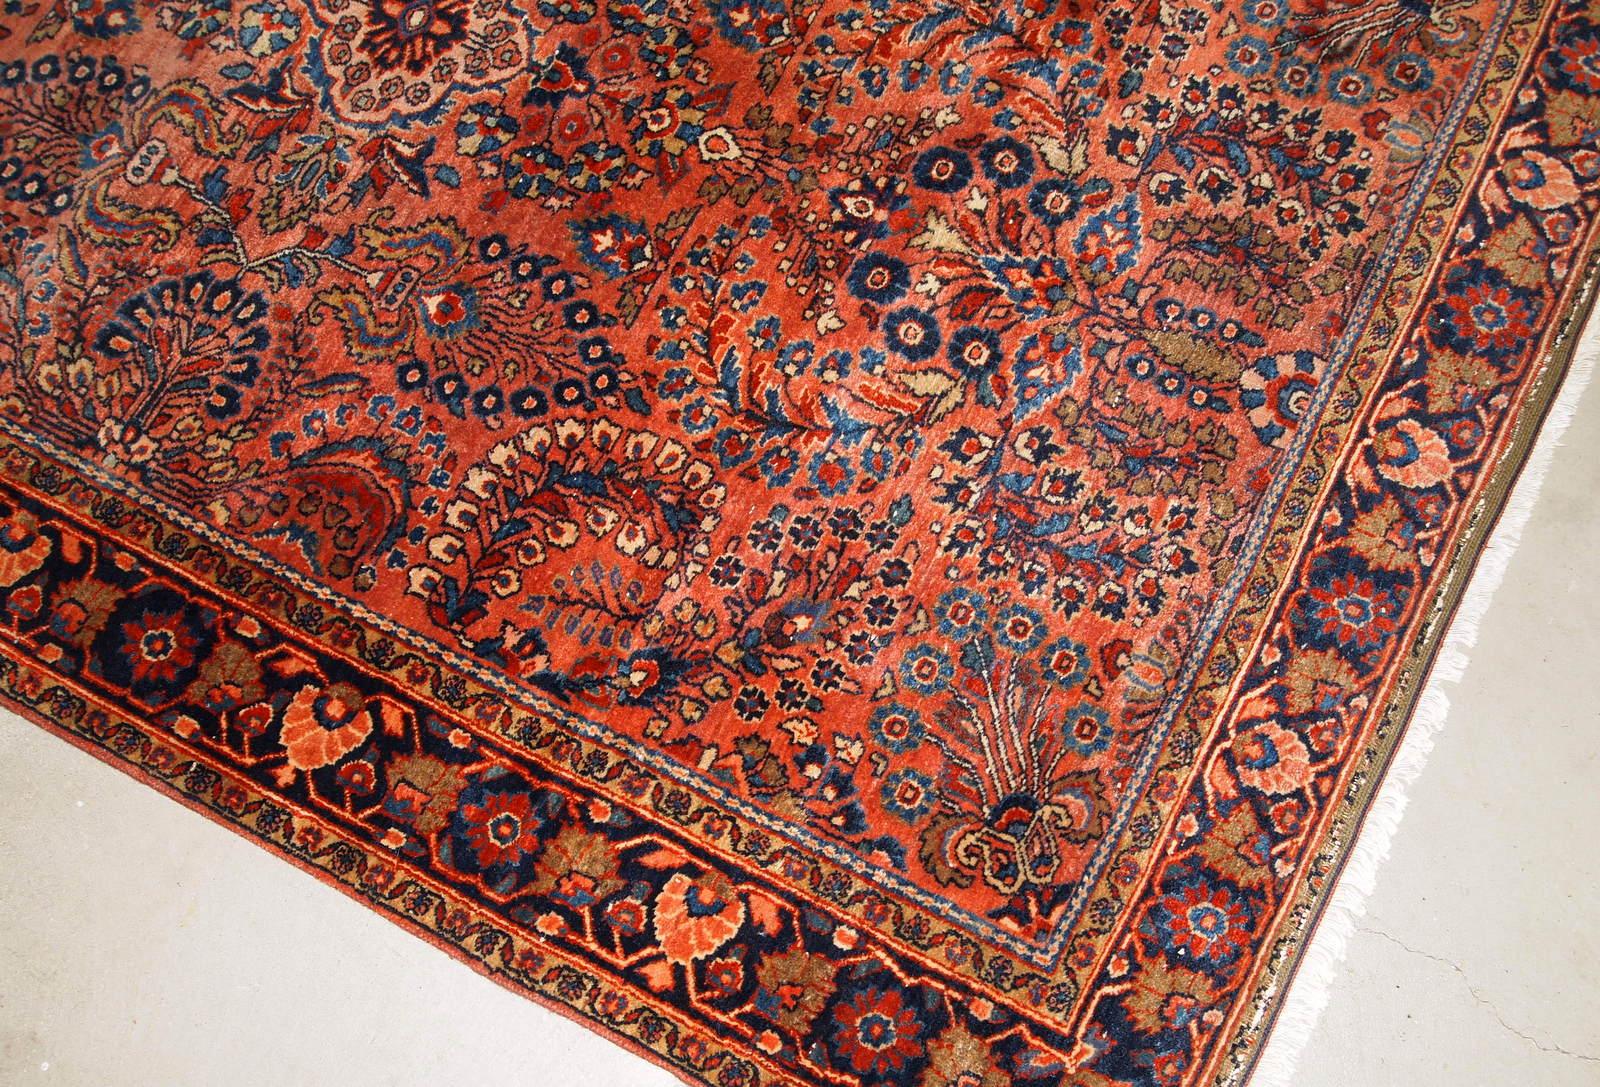 Handgefertigter antiker Sarouk-Teppich in gutem Originalzustand. Der Teppich wurde zu Beginn des 20. Jahrhunderts aus roter Wolle hergestellt.

?-Zustand: original gut,

-um: 1920er Jahre,

-Größe: 4,1' x 6,5' (125cm x 198cm),

-Material: